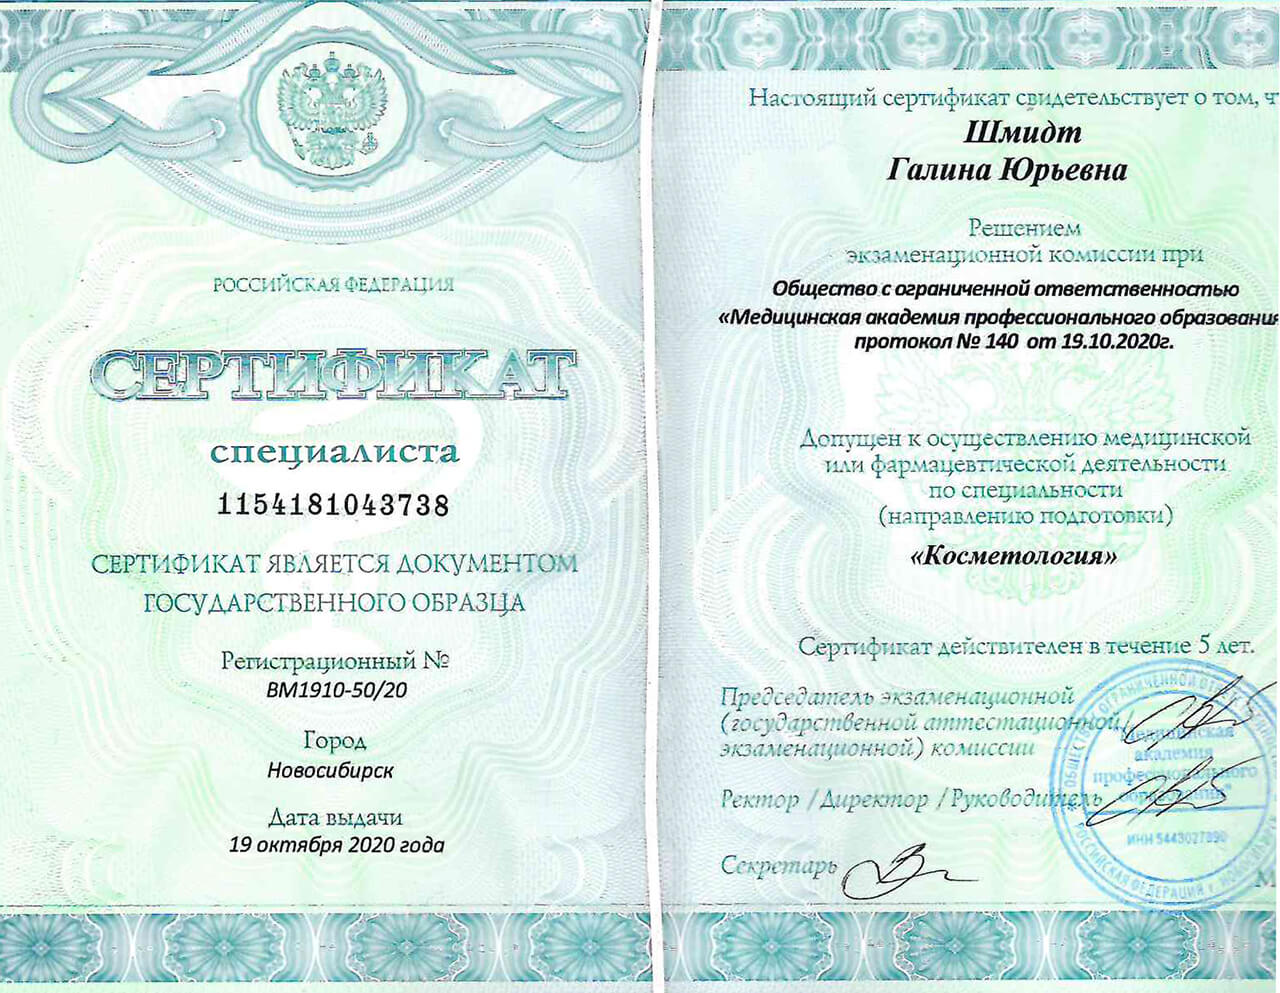 Сертификат специалиста "Косметология" 2020 г.